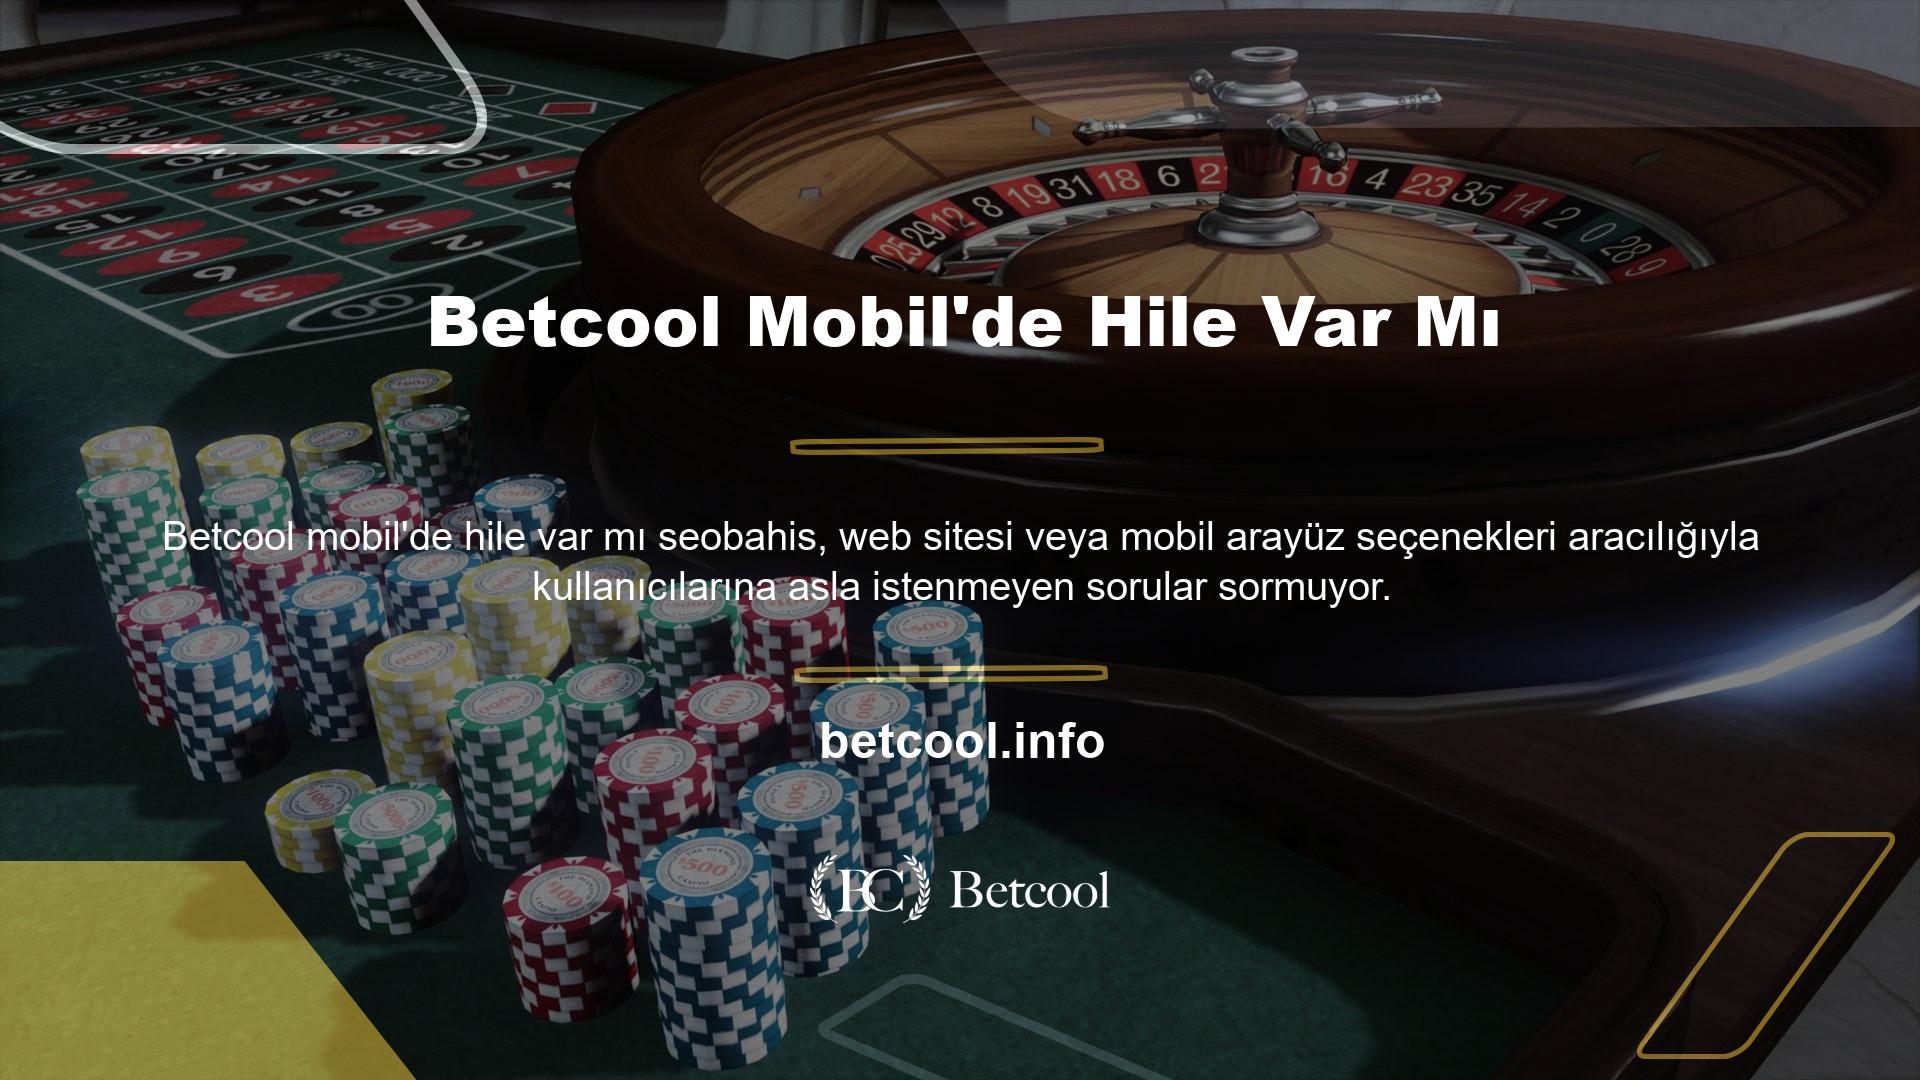 Betcool, sitelerindeki tüm oyun seçeneklerini takip eder, bu nedenle mobil dolandırıcılık yoktur